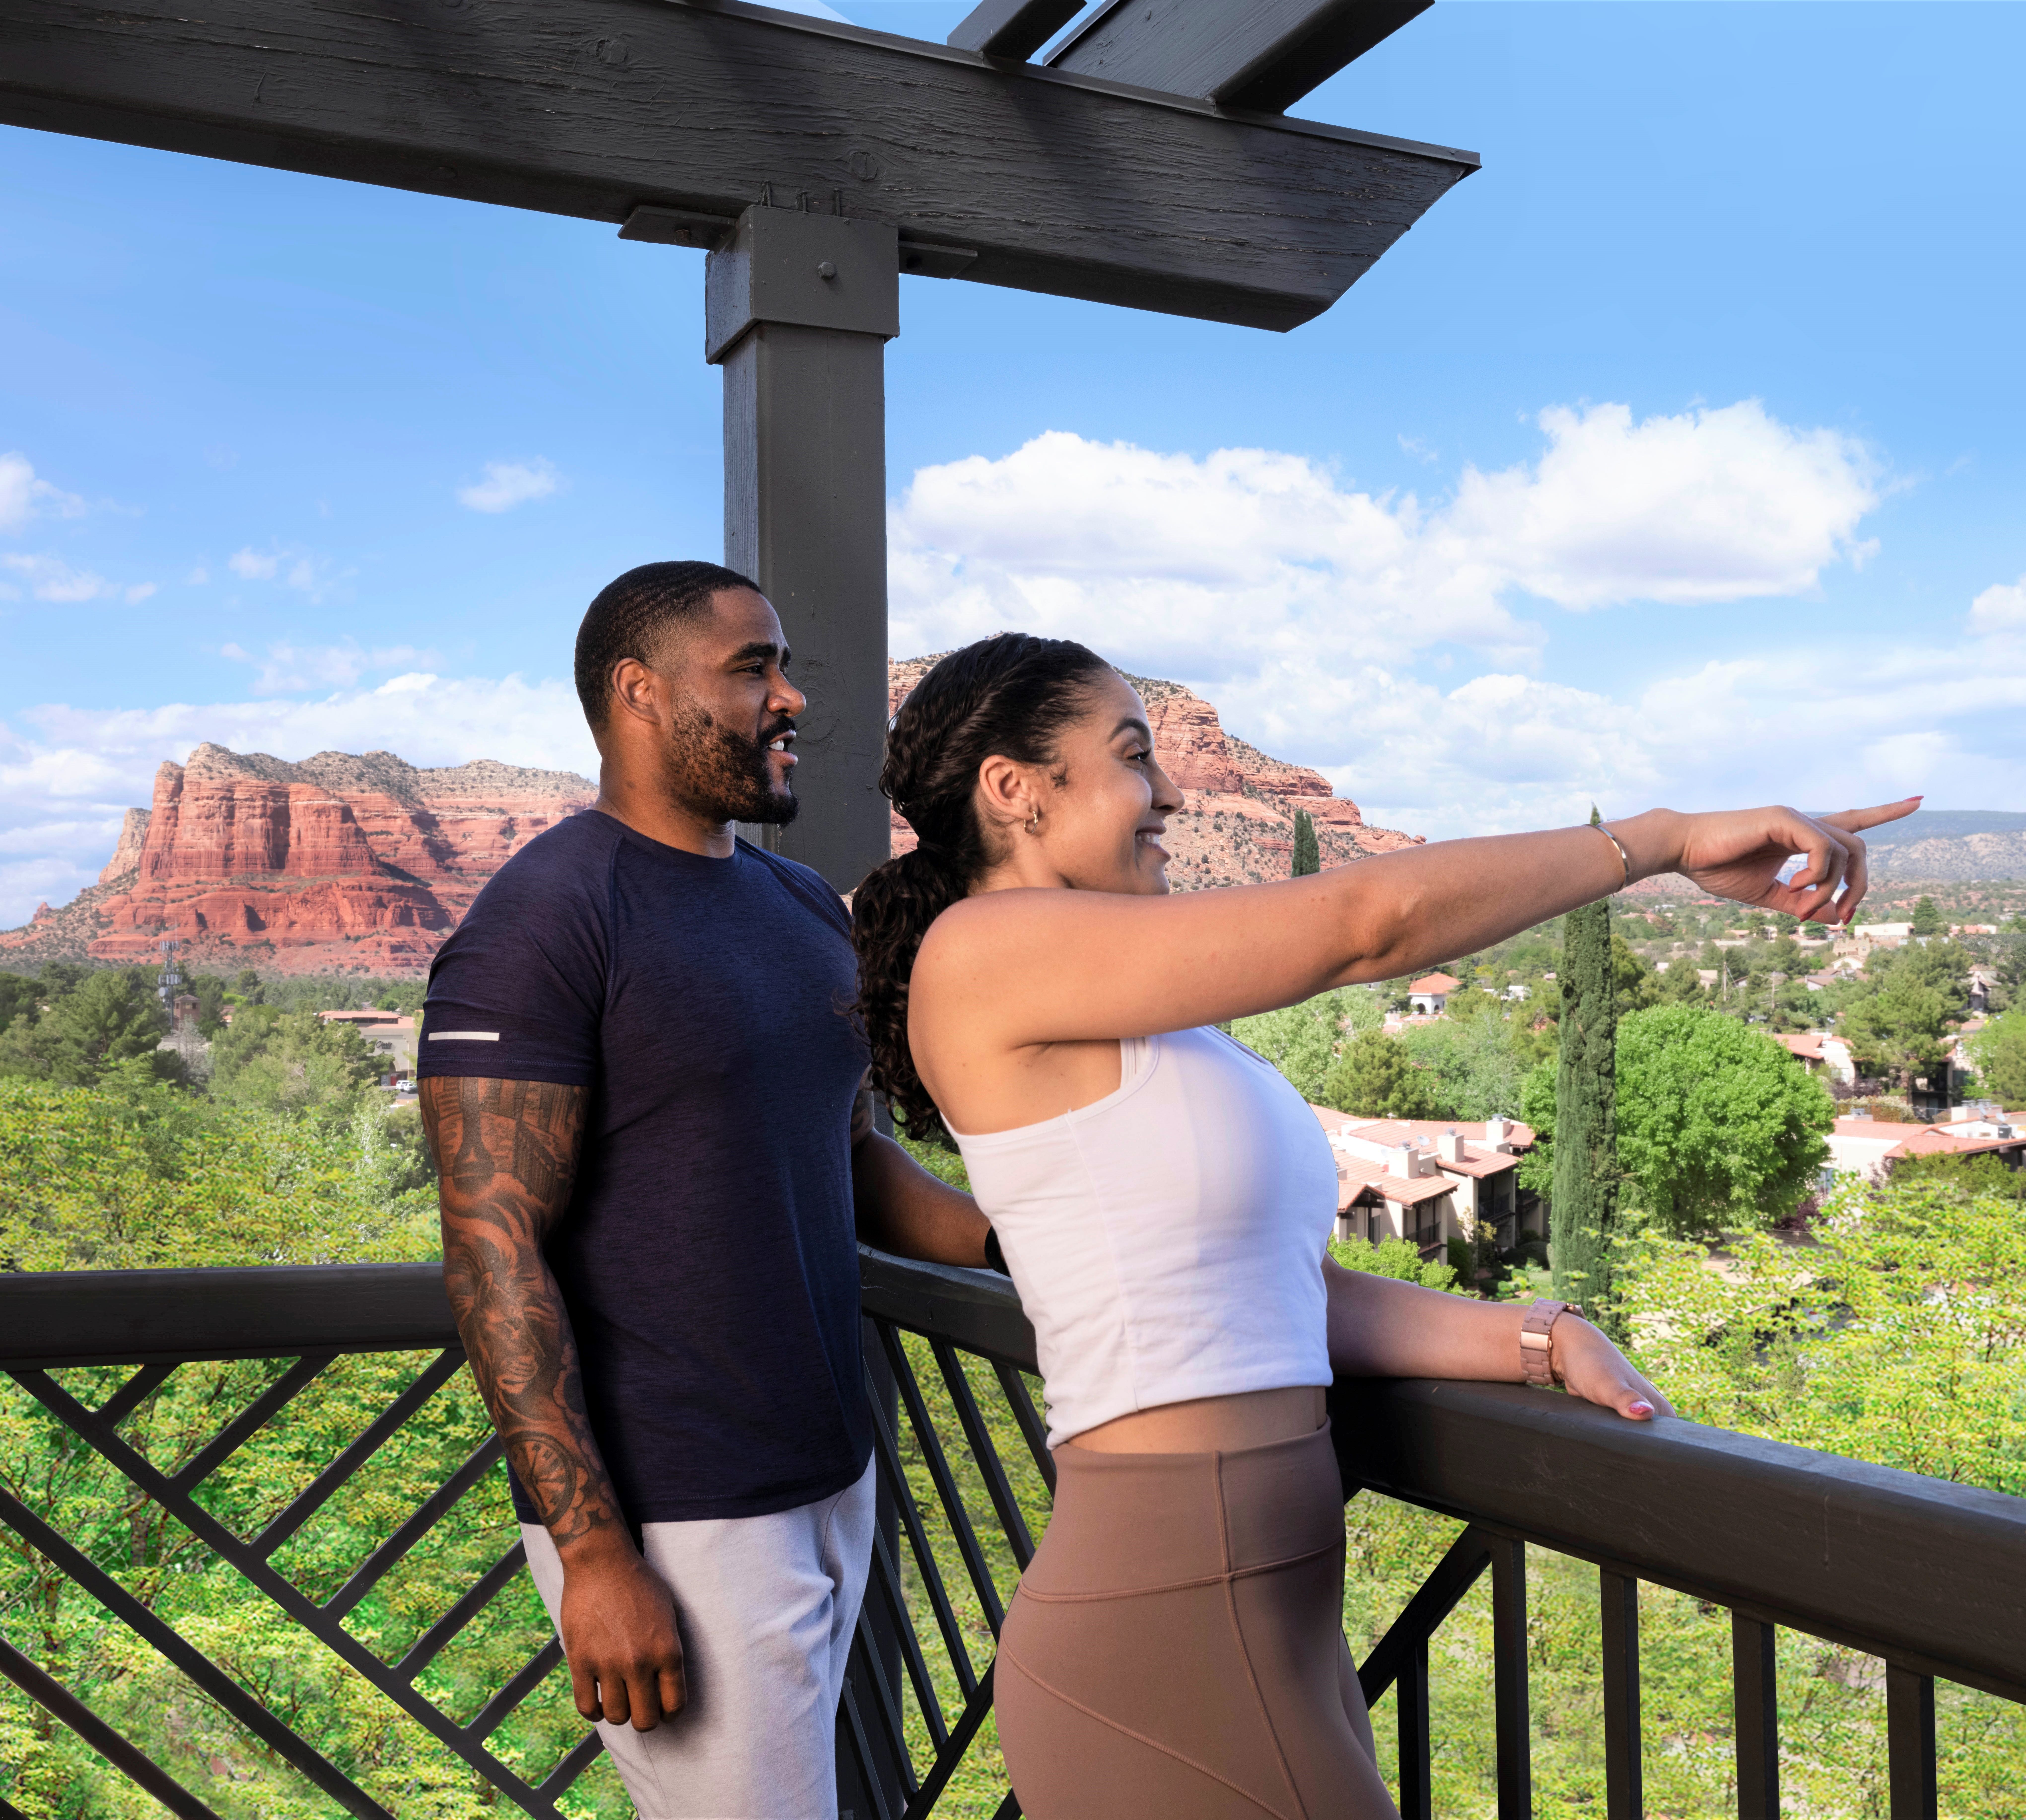 couple standing on balcony overlooking canyons